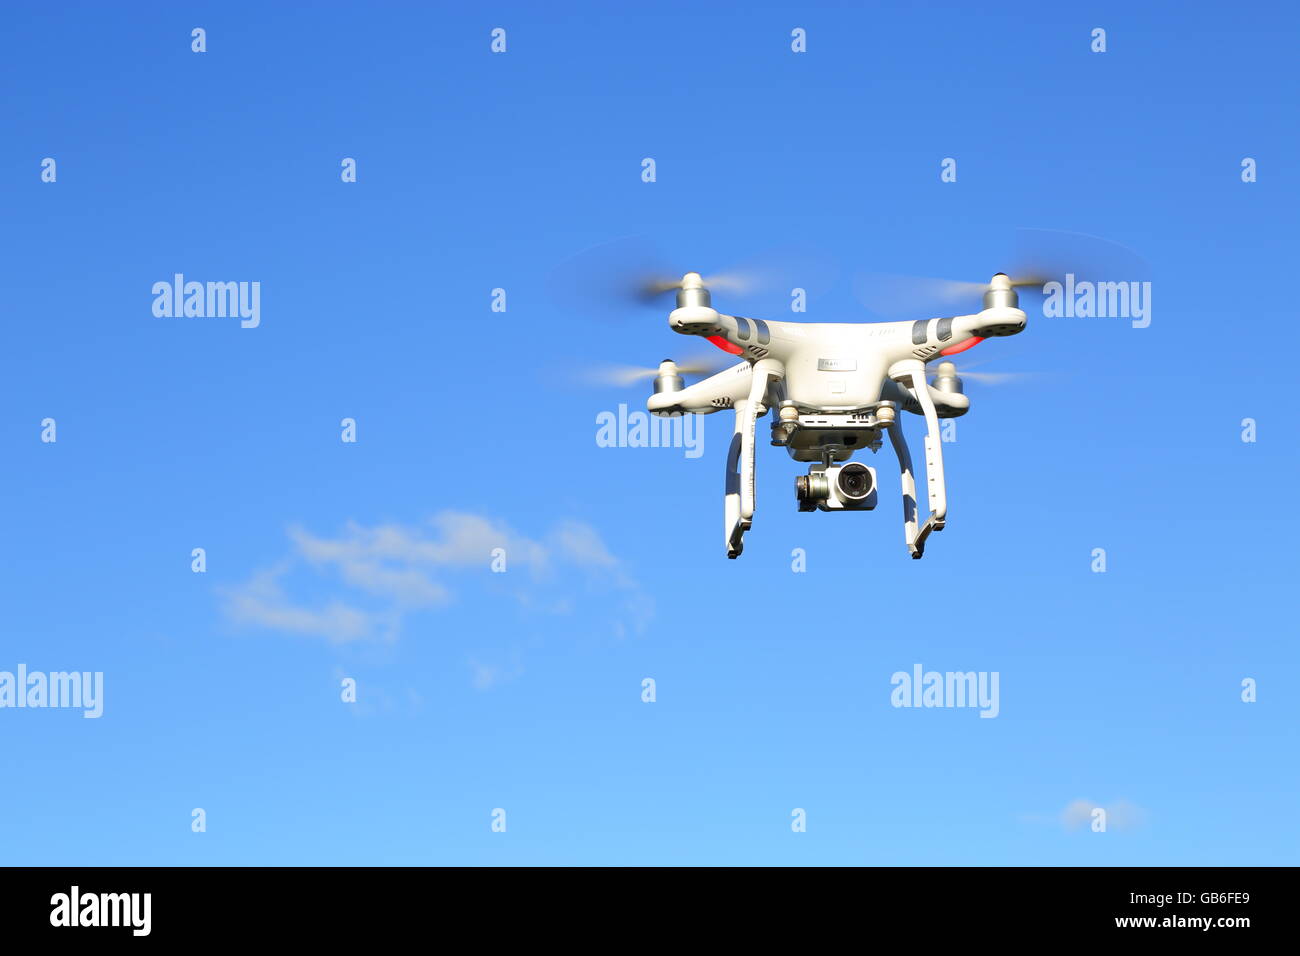 Un avión teledirigido, o UAV, o quadcopter, en vuelo bajo un intenso cielo azul. Foto de stock